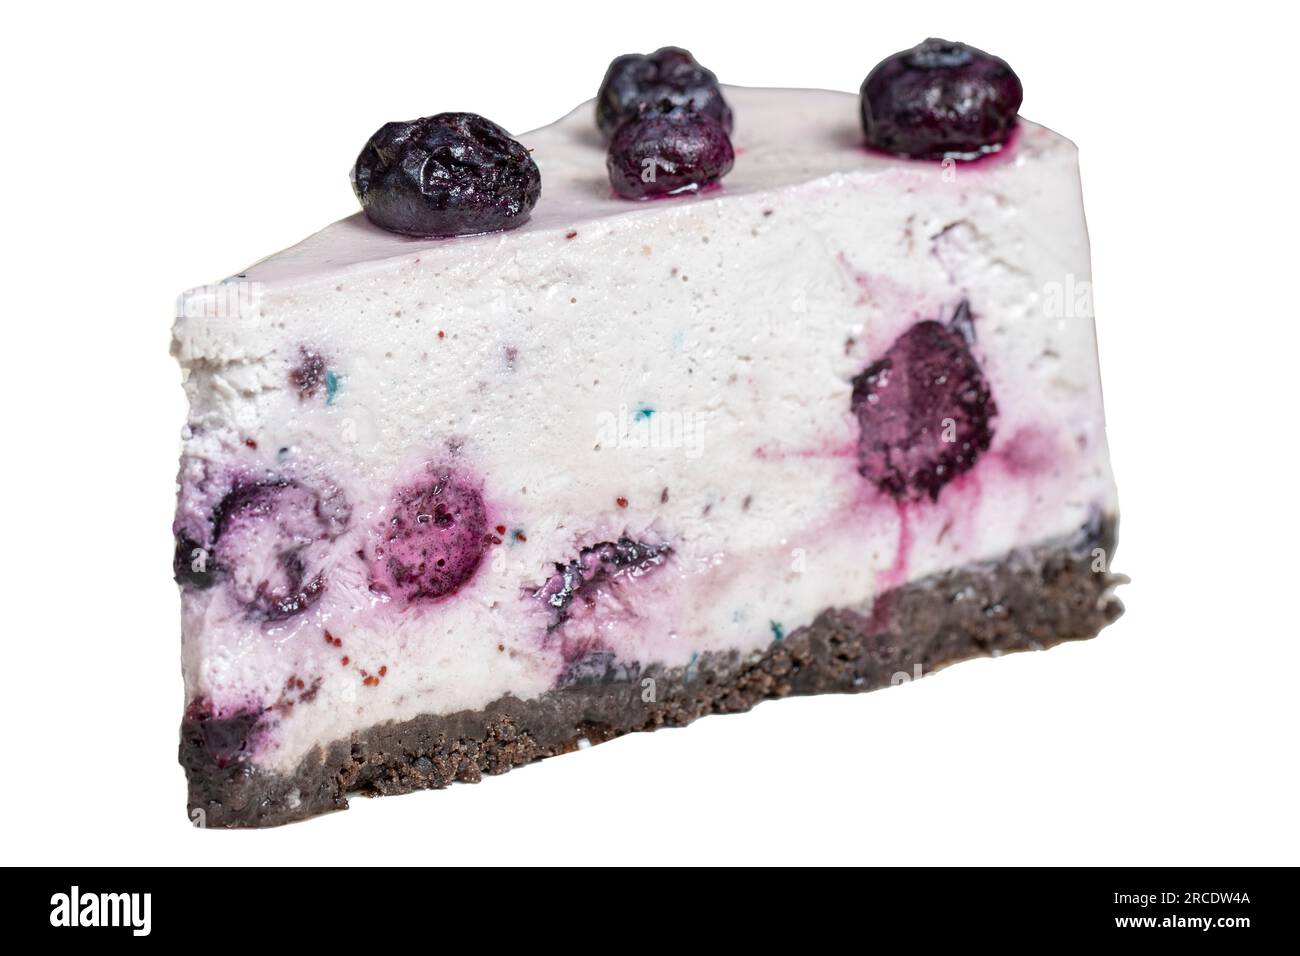 Blueberry cake. Blueberry fruit slice cake isolated on white background Stock Photo